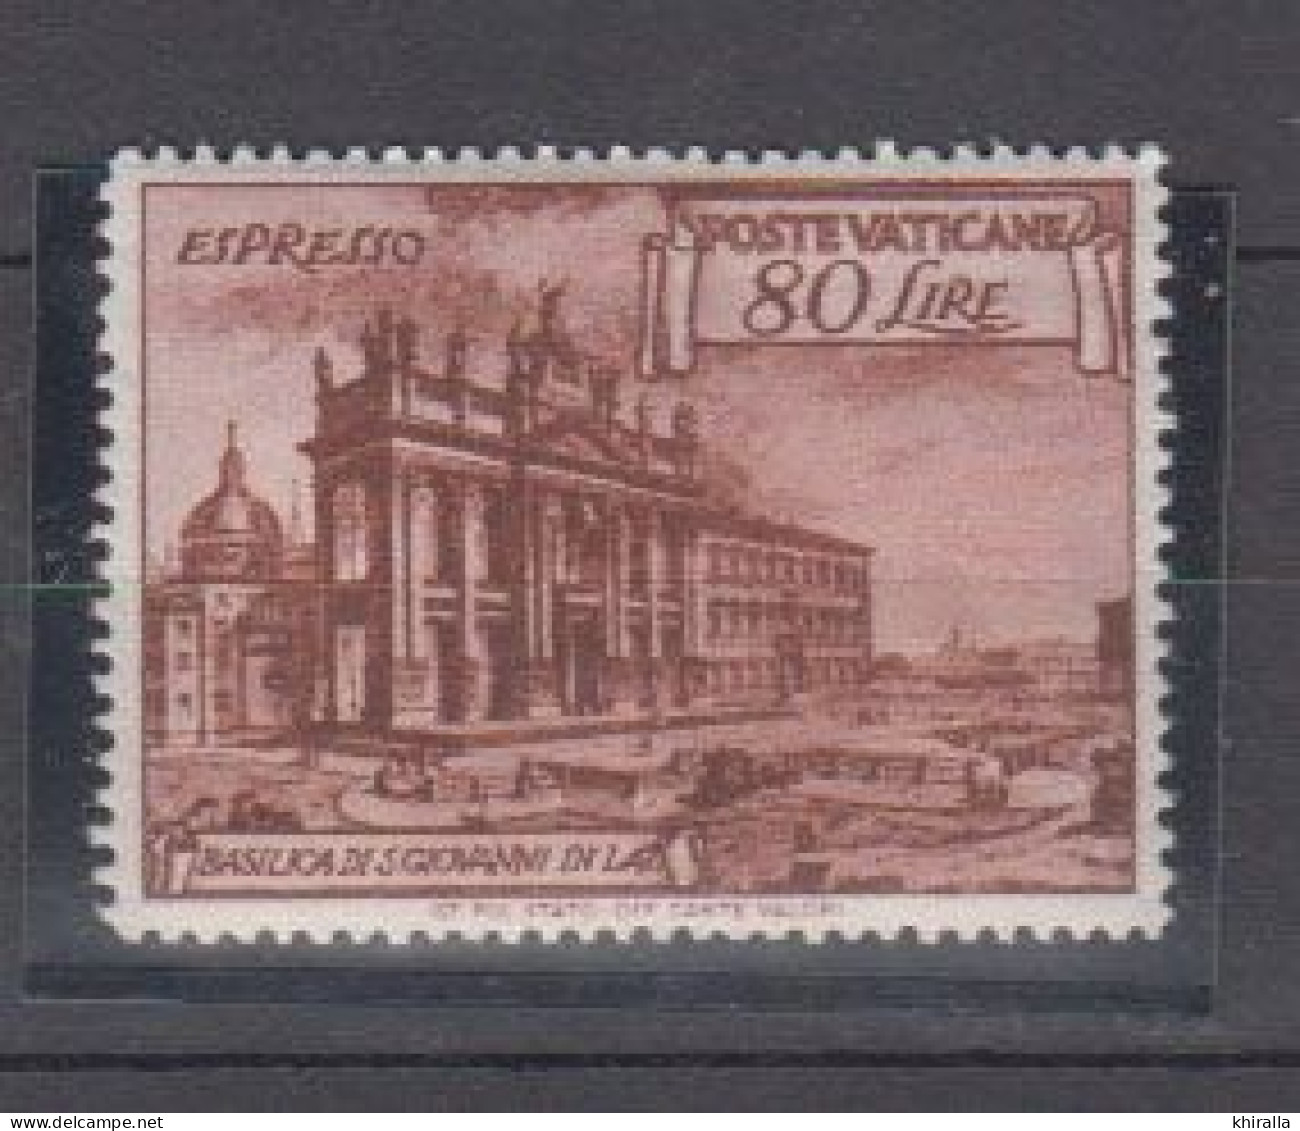 VATICAN    1949    Exprés  N°  11   ( Neufs Sans Charniére )   COTE  55 € 00       ( D 88 ) - Urgente